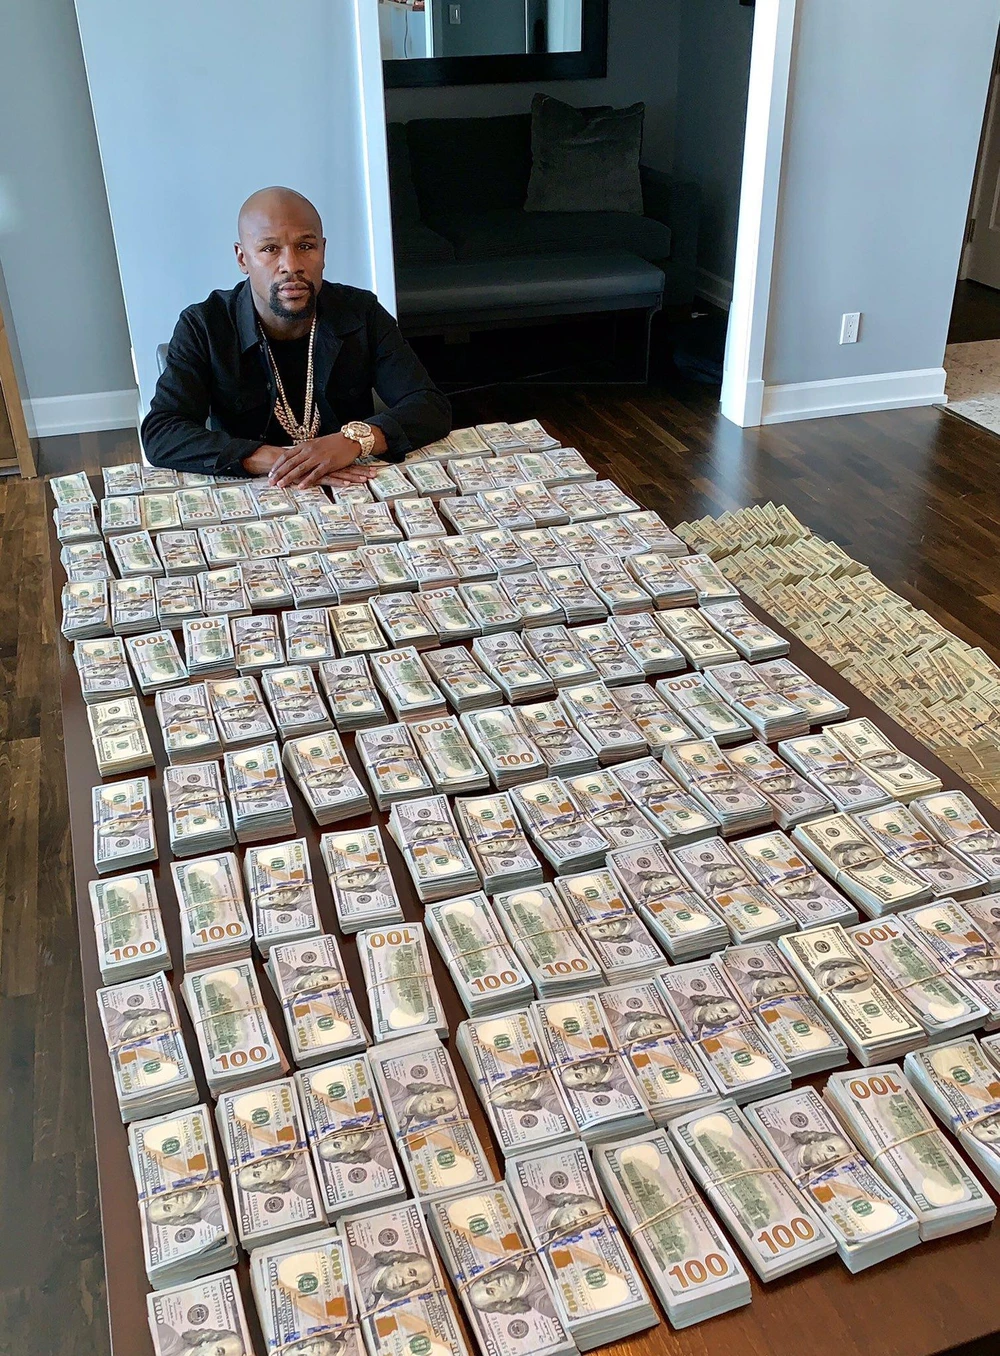 "Money" Mayweather khoe 2 triệu USD tiền mặt trên bàn